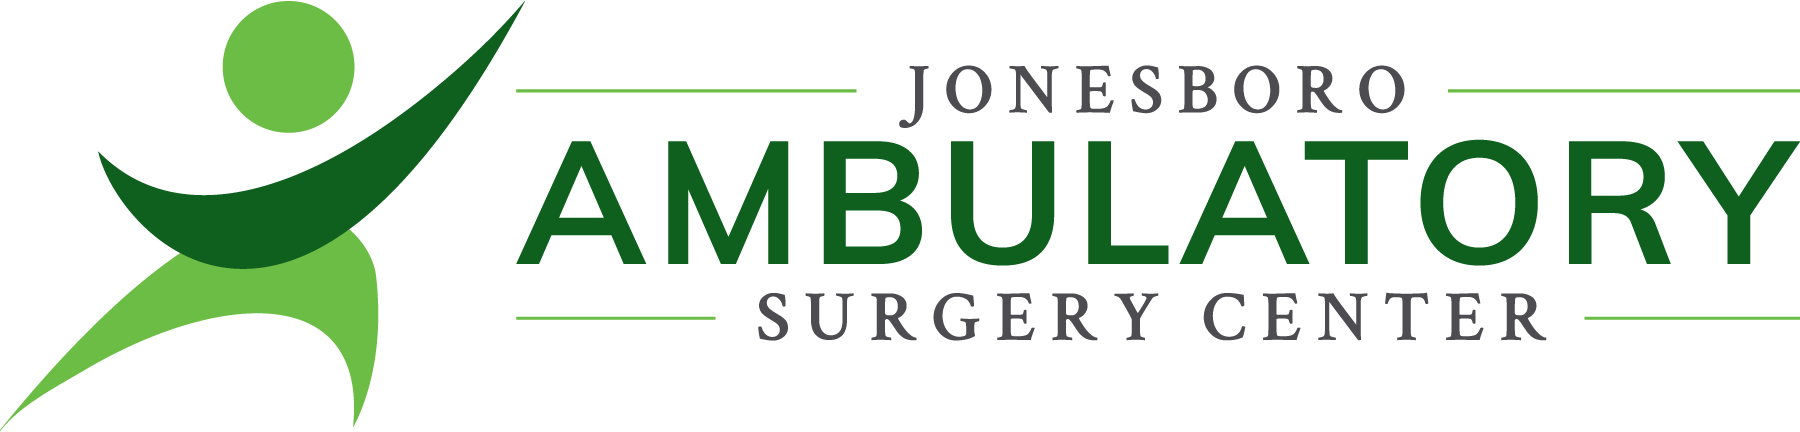 Jonesboro Ambulatory Surgery Center Logo